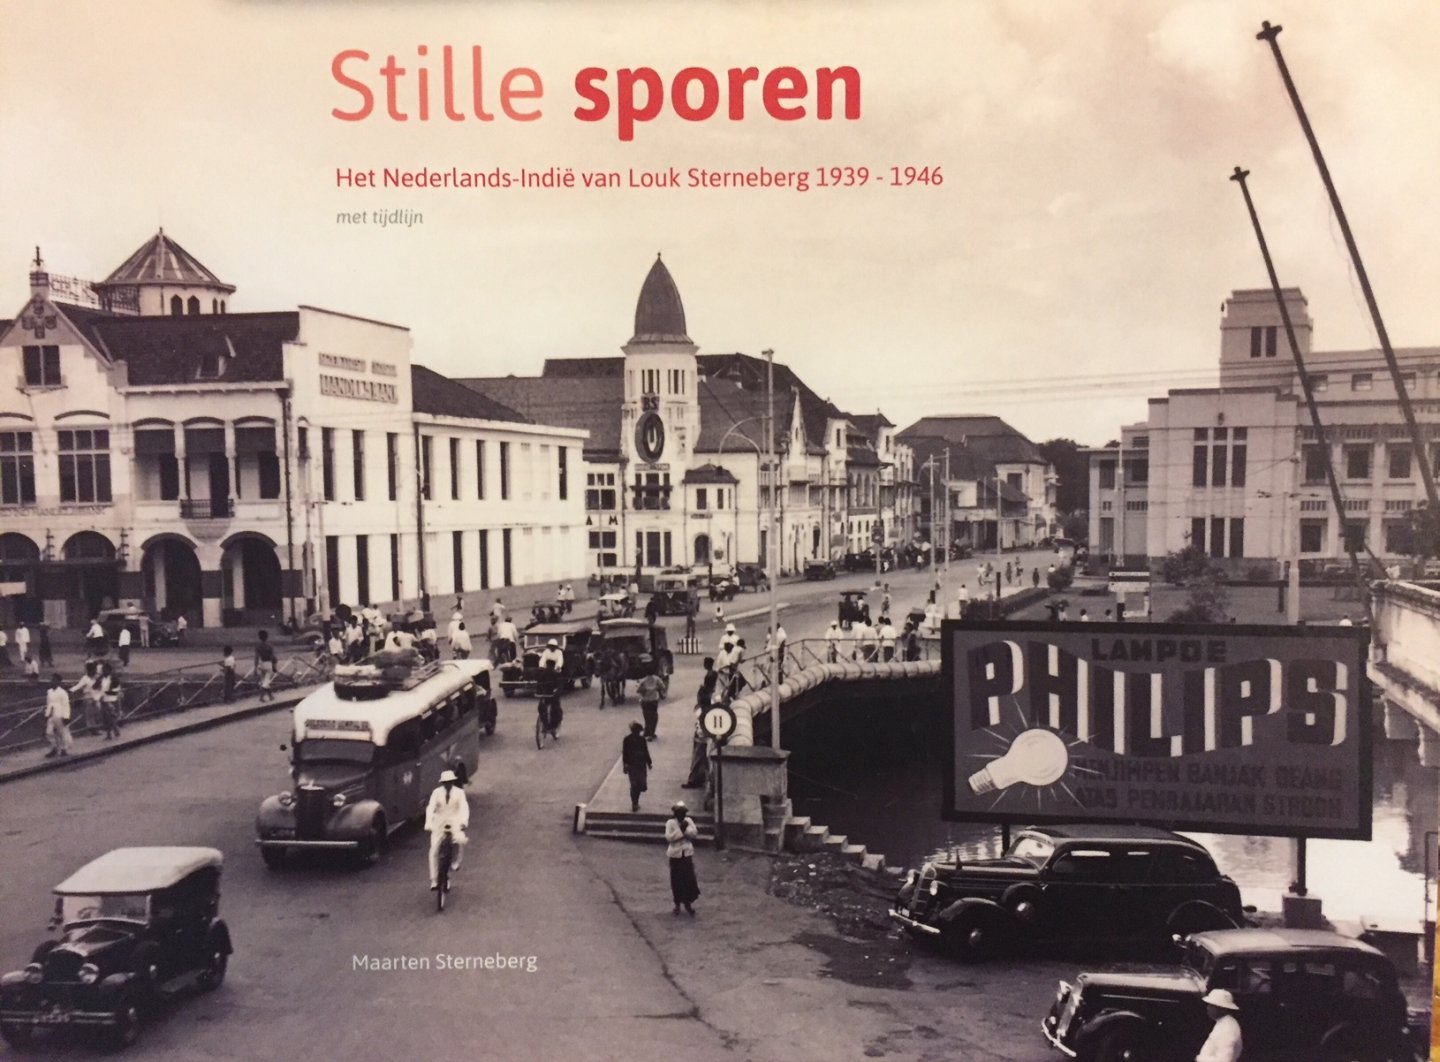 Sterneberg, Maarten. - Stille sporen. Het Nederlands-Indië van Louk Sterneberg 1939-1946.